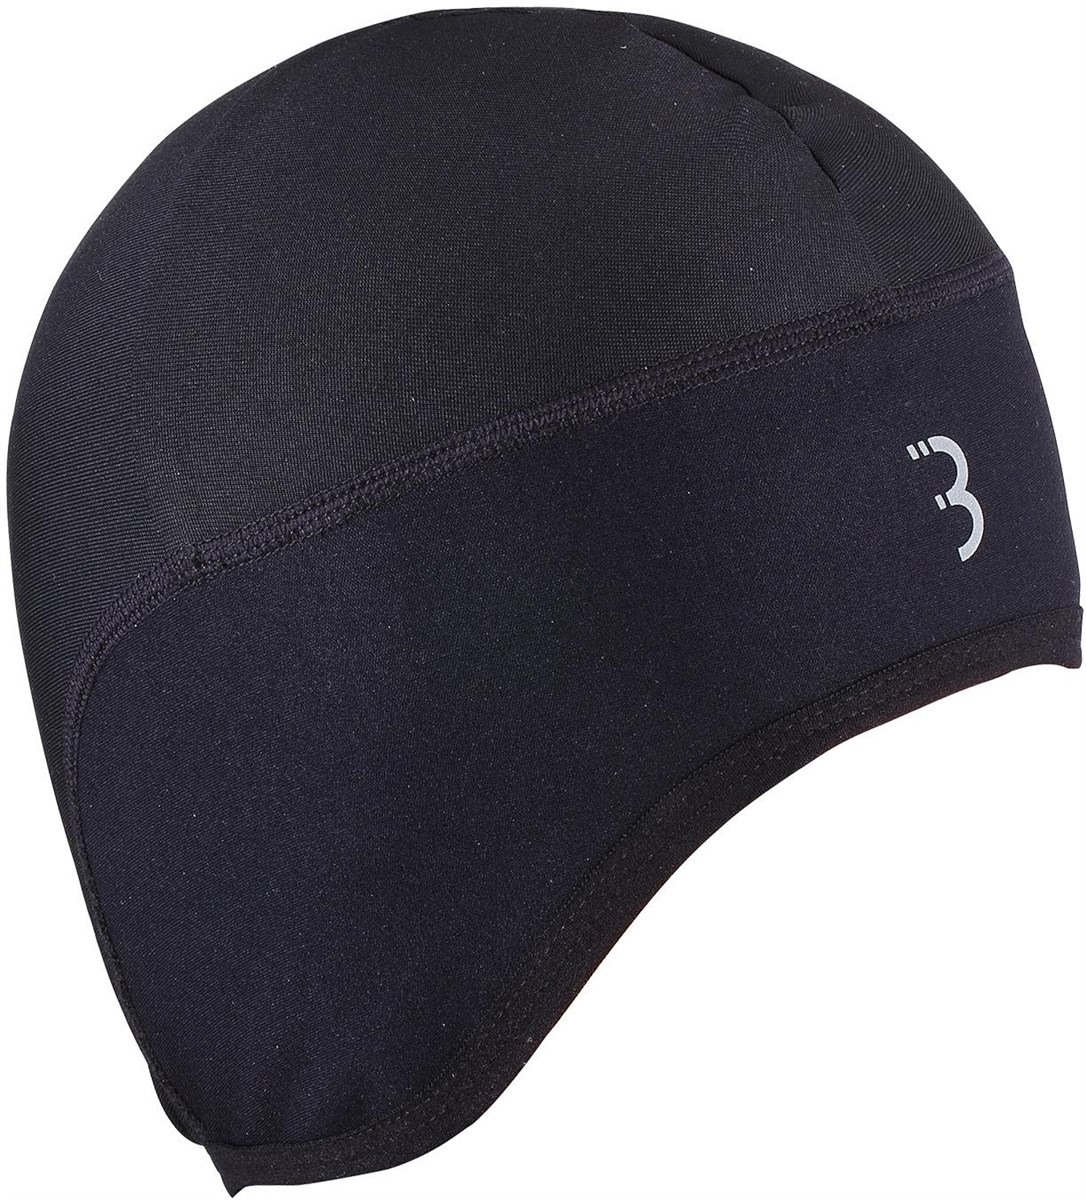 BBB Windbreak Winter Under-Helmet Hat product image